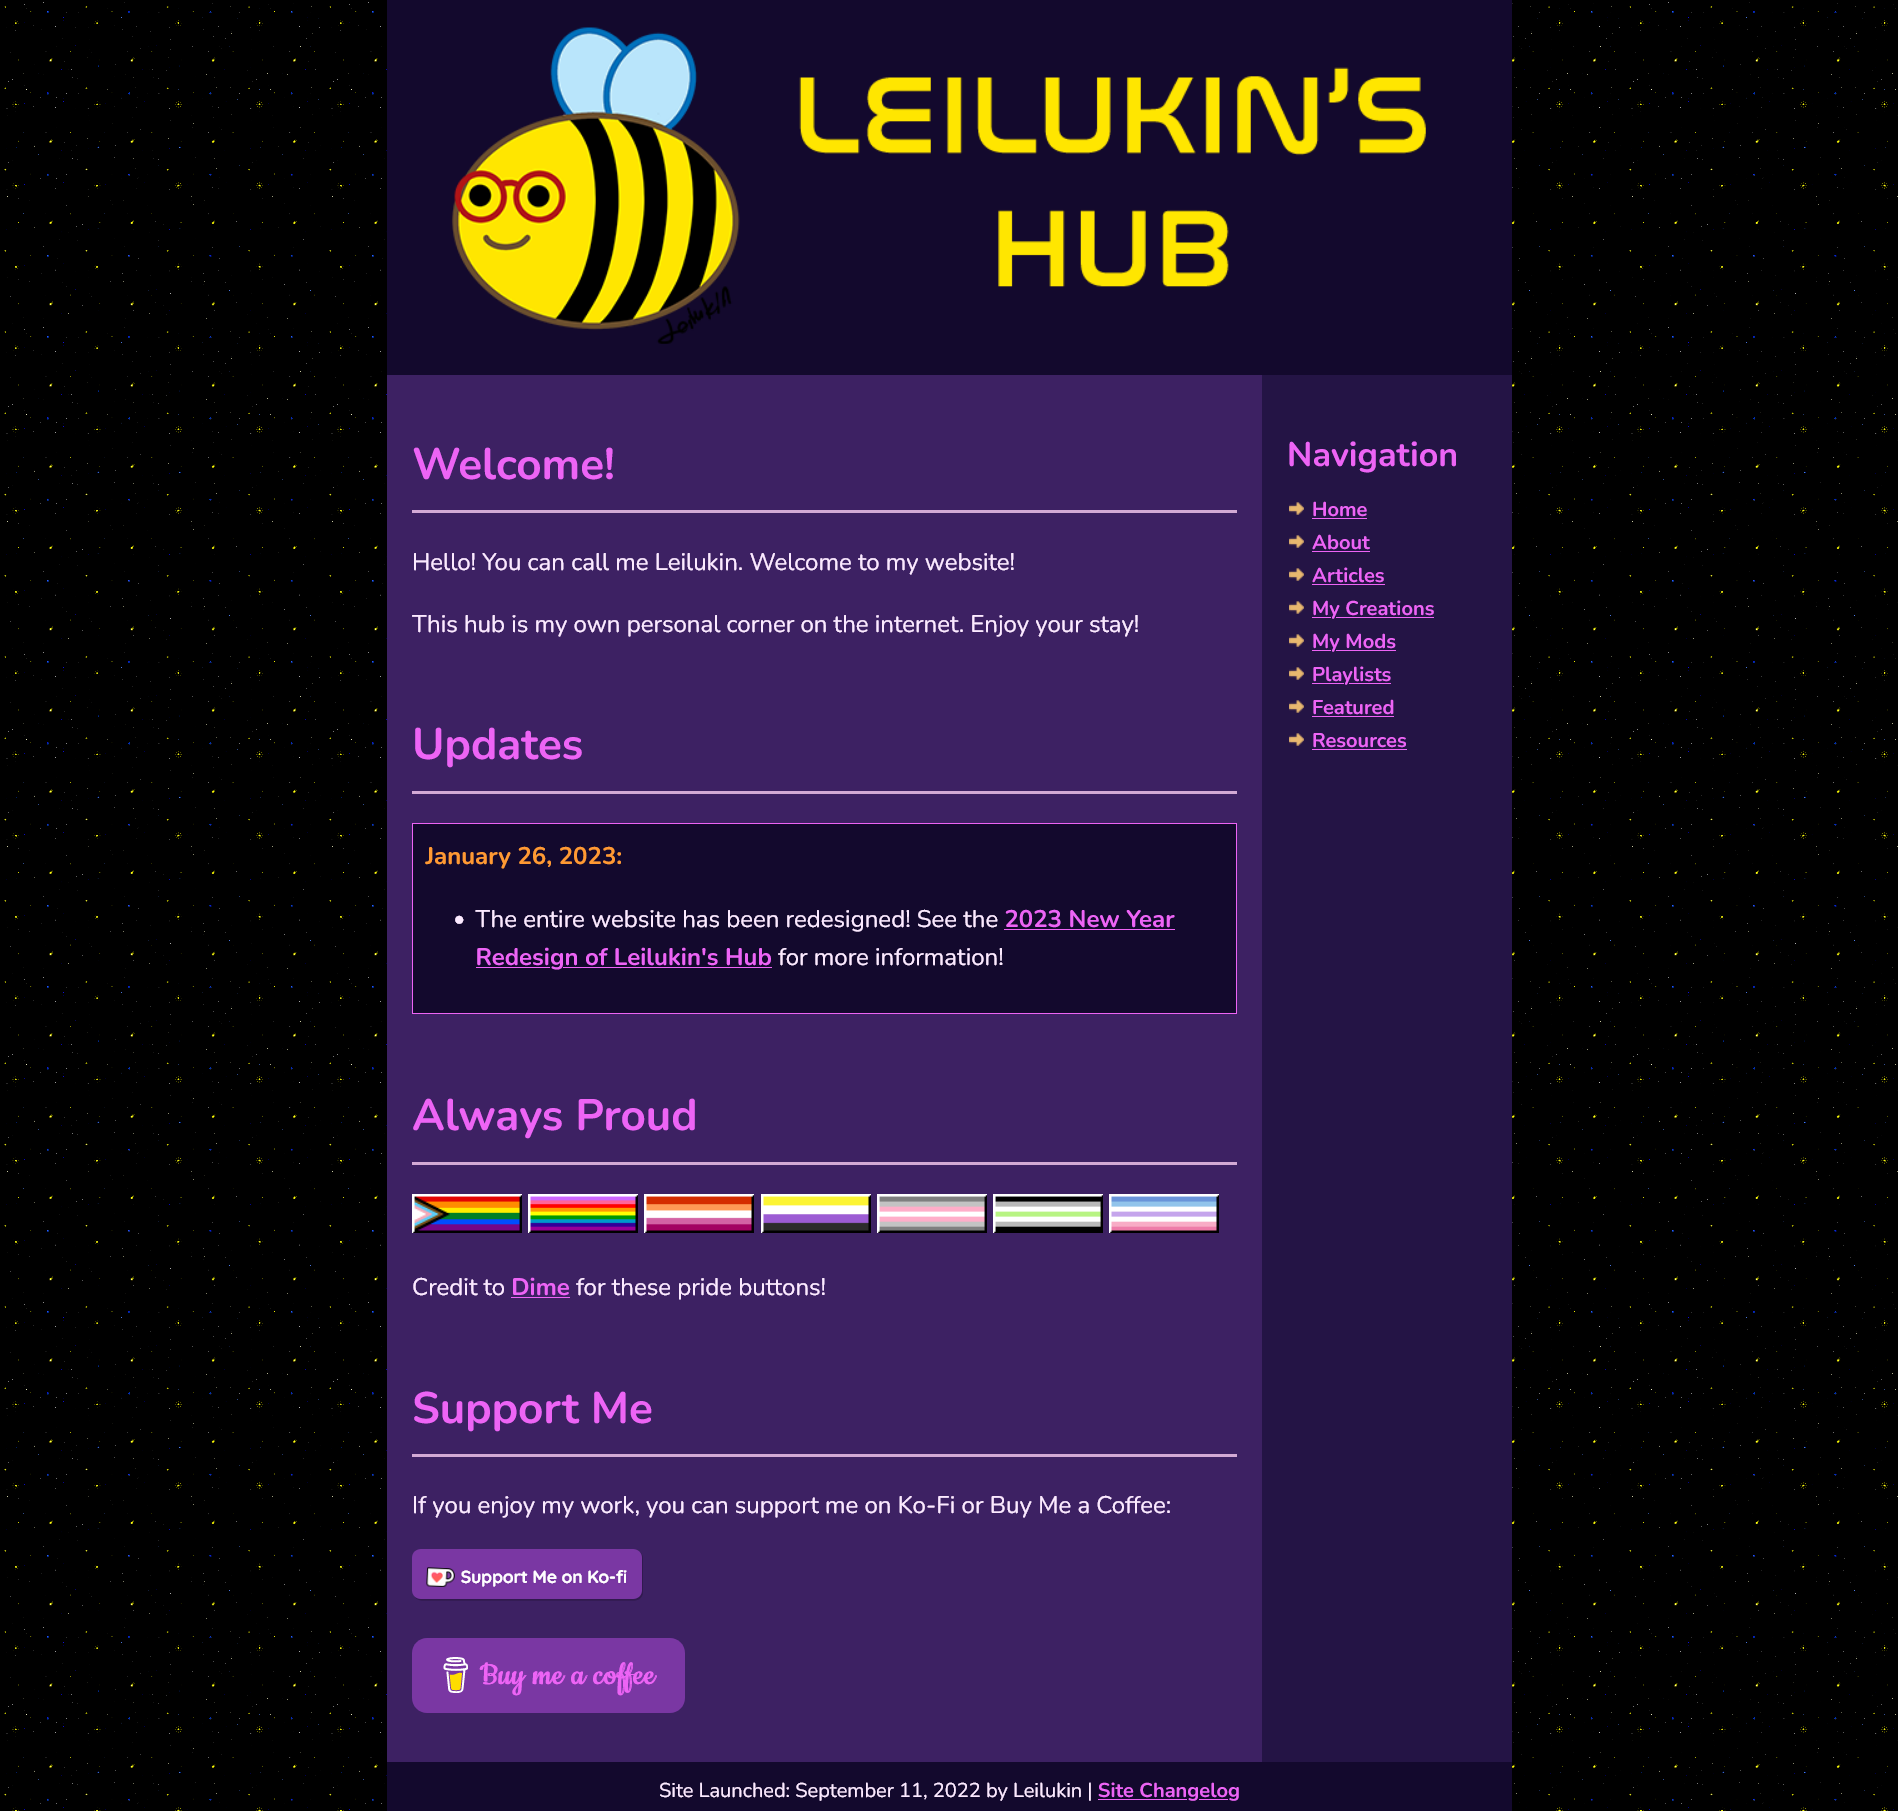 Leilukin's Hub home page on 26 January 2023